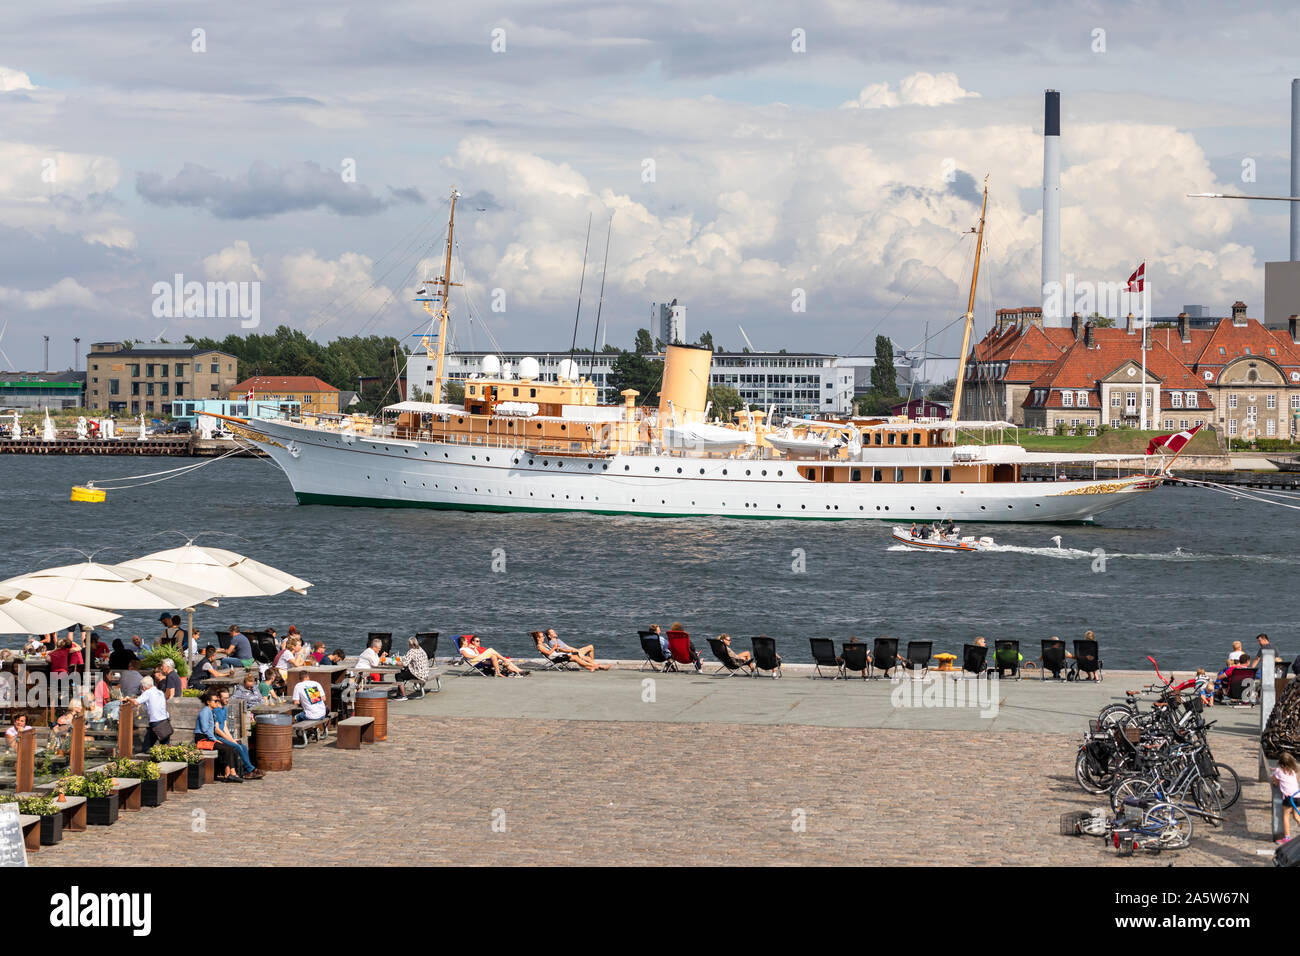 Her Danish Majesty's Yacht Dannebrog, the Danish Royal Yacht, in Copenhagen Harbour, Denmark Stock Photo